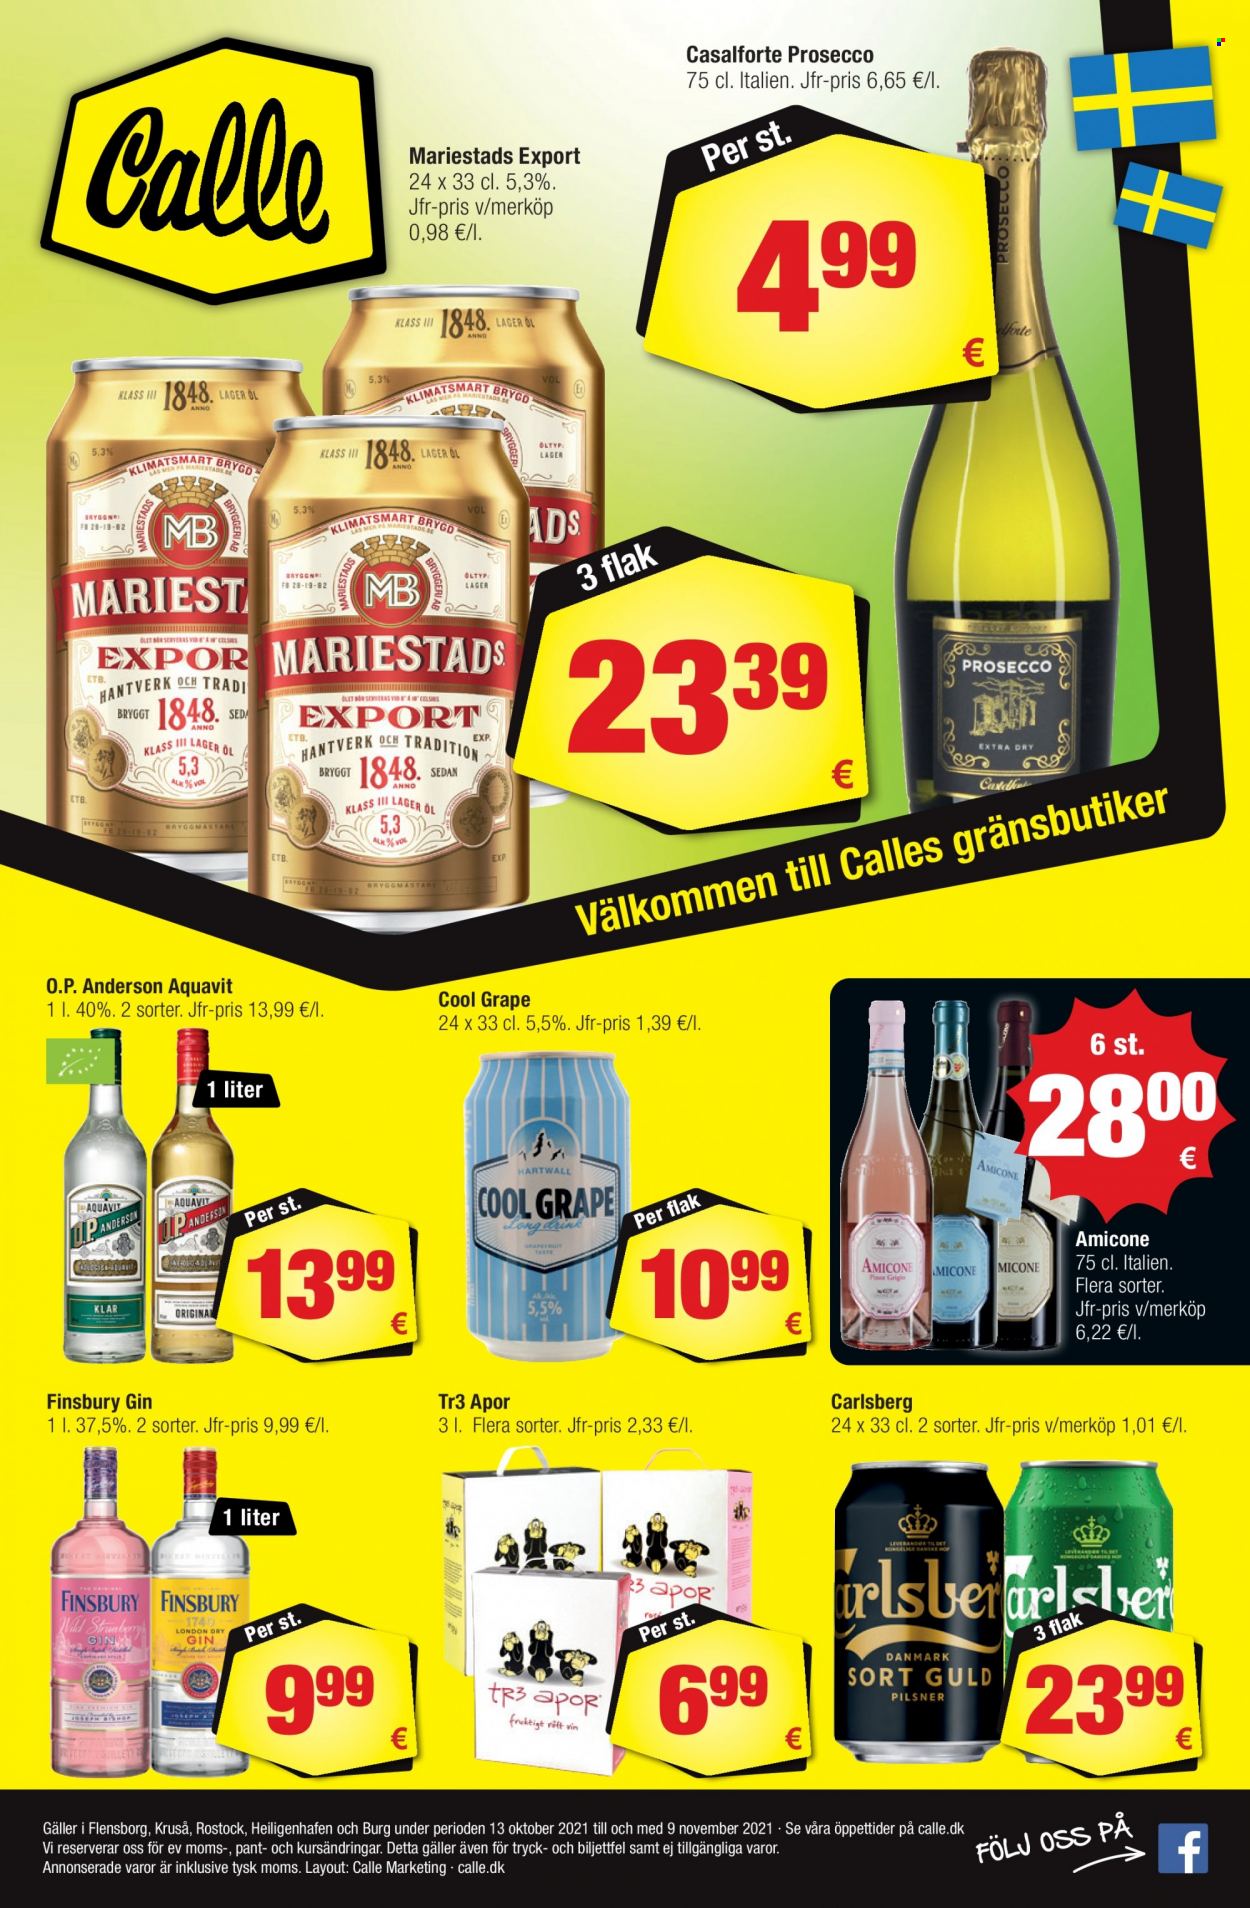 thumbnail - Calle tilbud  - 13.10.2021 - 26.10.2021 - tilbudsprodukter - Carlsberg, øl, prosecco, gin. Side 1.